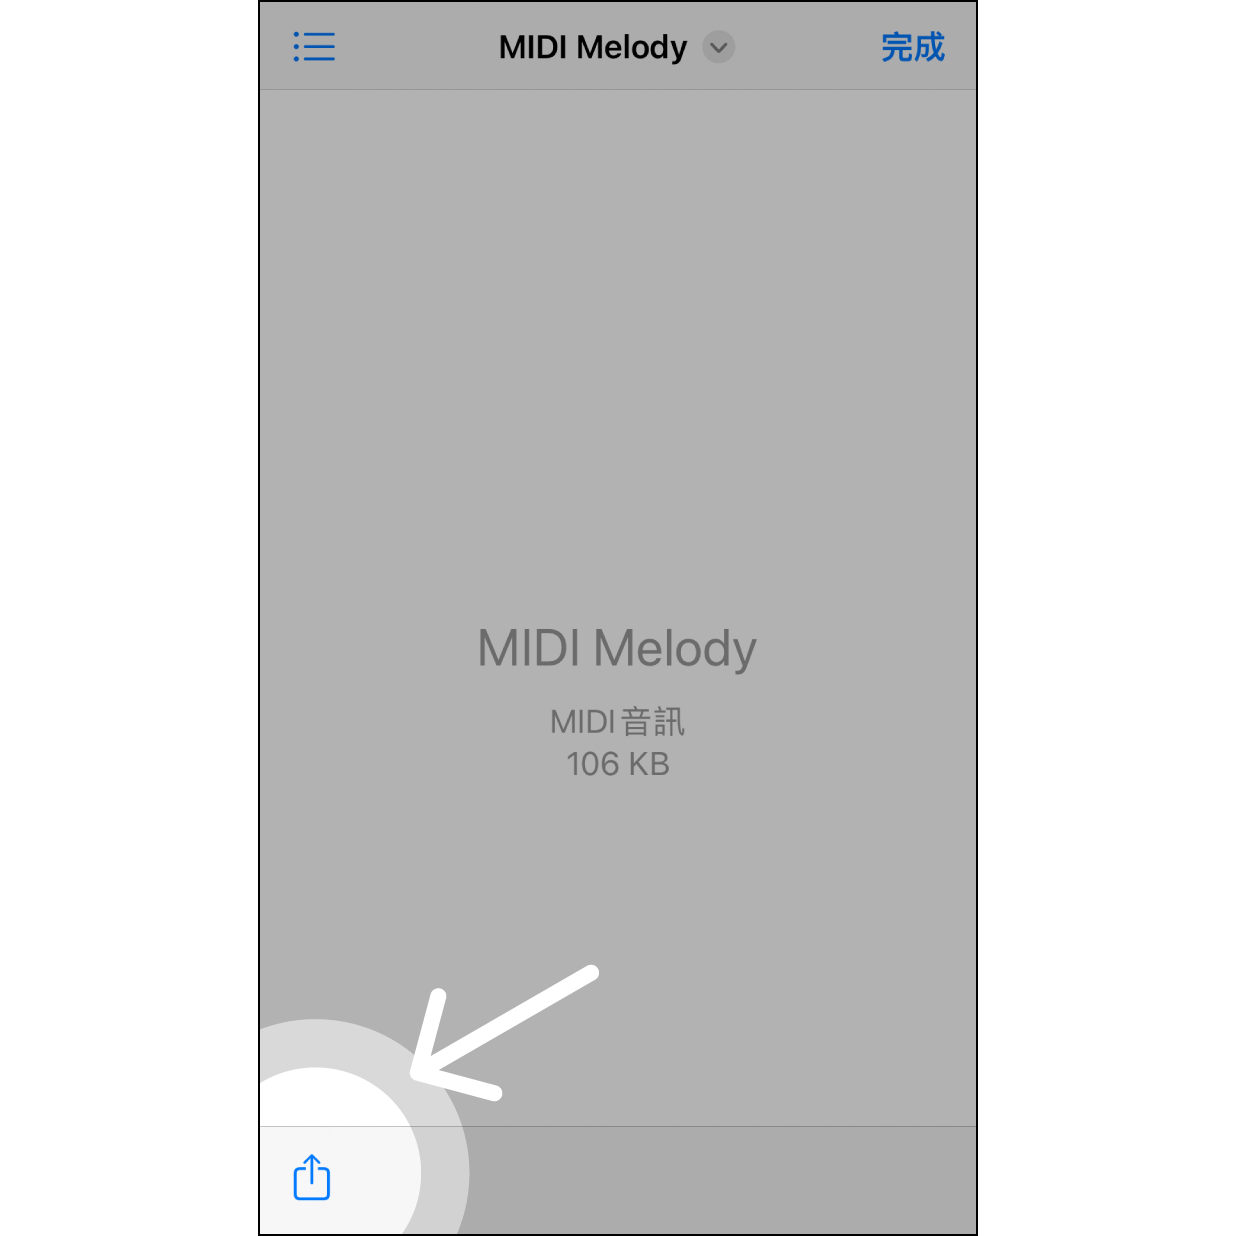 1. 在「档案」app 分享 进入「档案」app 选择 MIDI 档案后，按左下角「分享」图示。